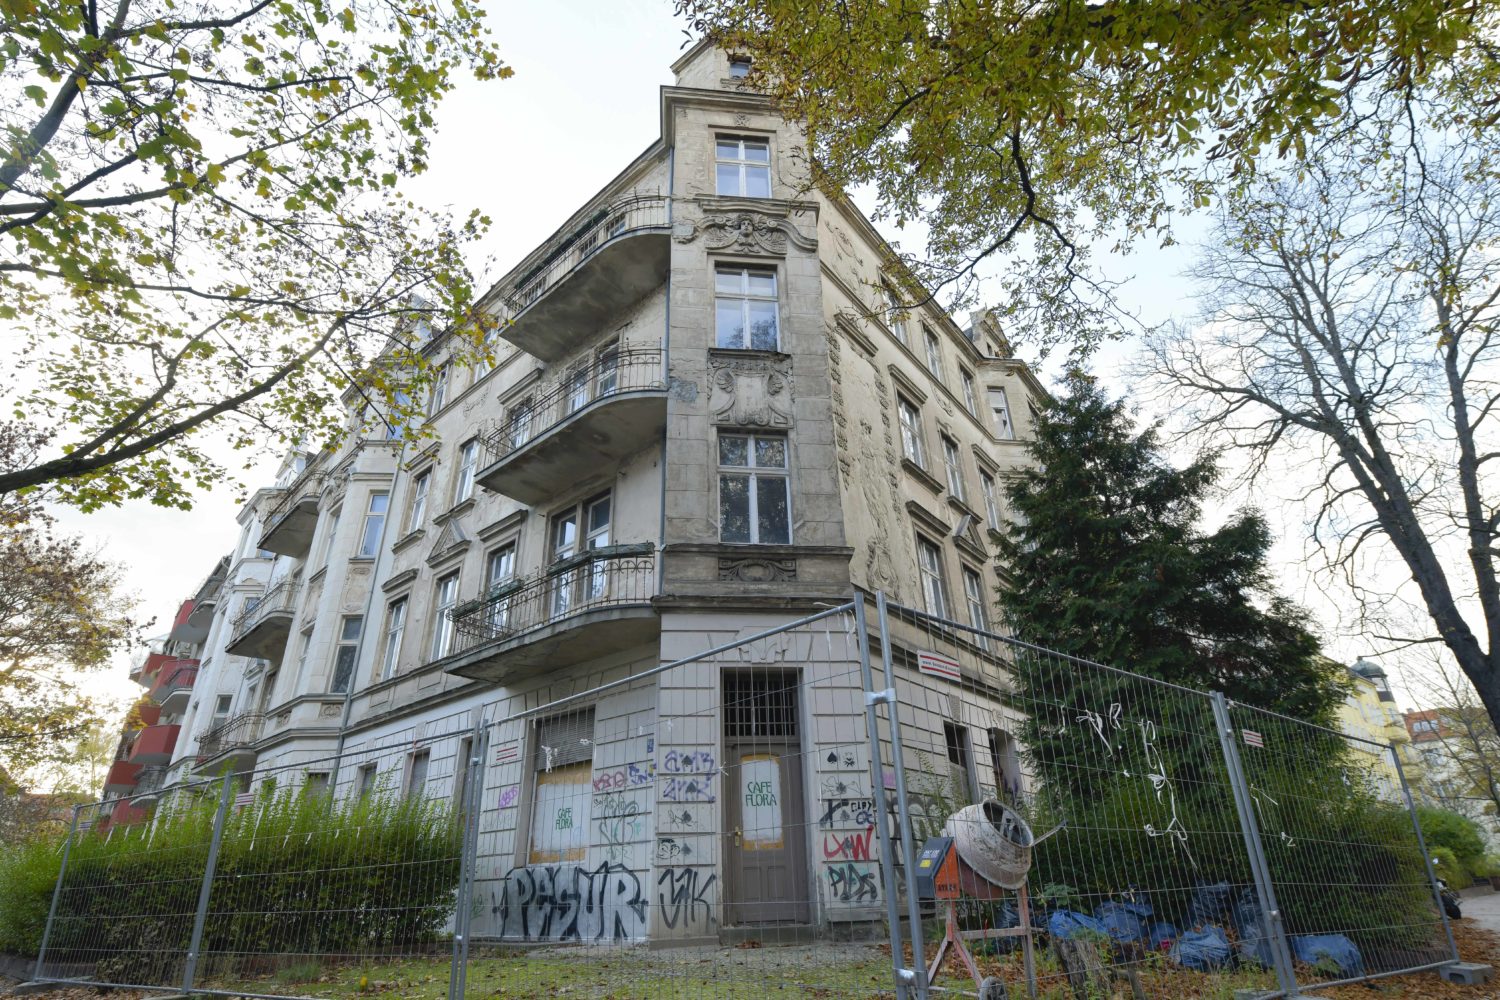 Leerstehende Häuser in Berlin: Geisterhaus in der Stubenrauchstraße, Oktober 2019. Foto: Imago/Joko